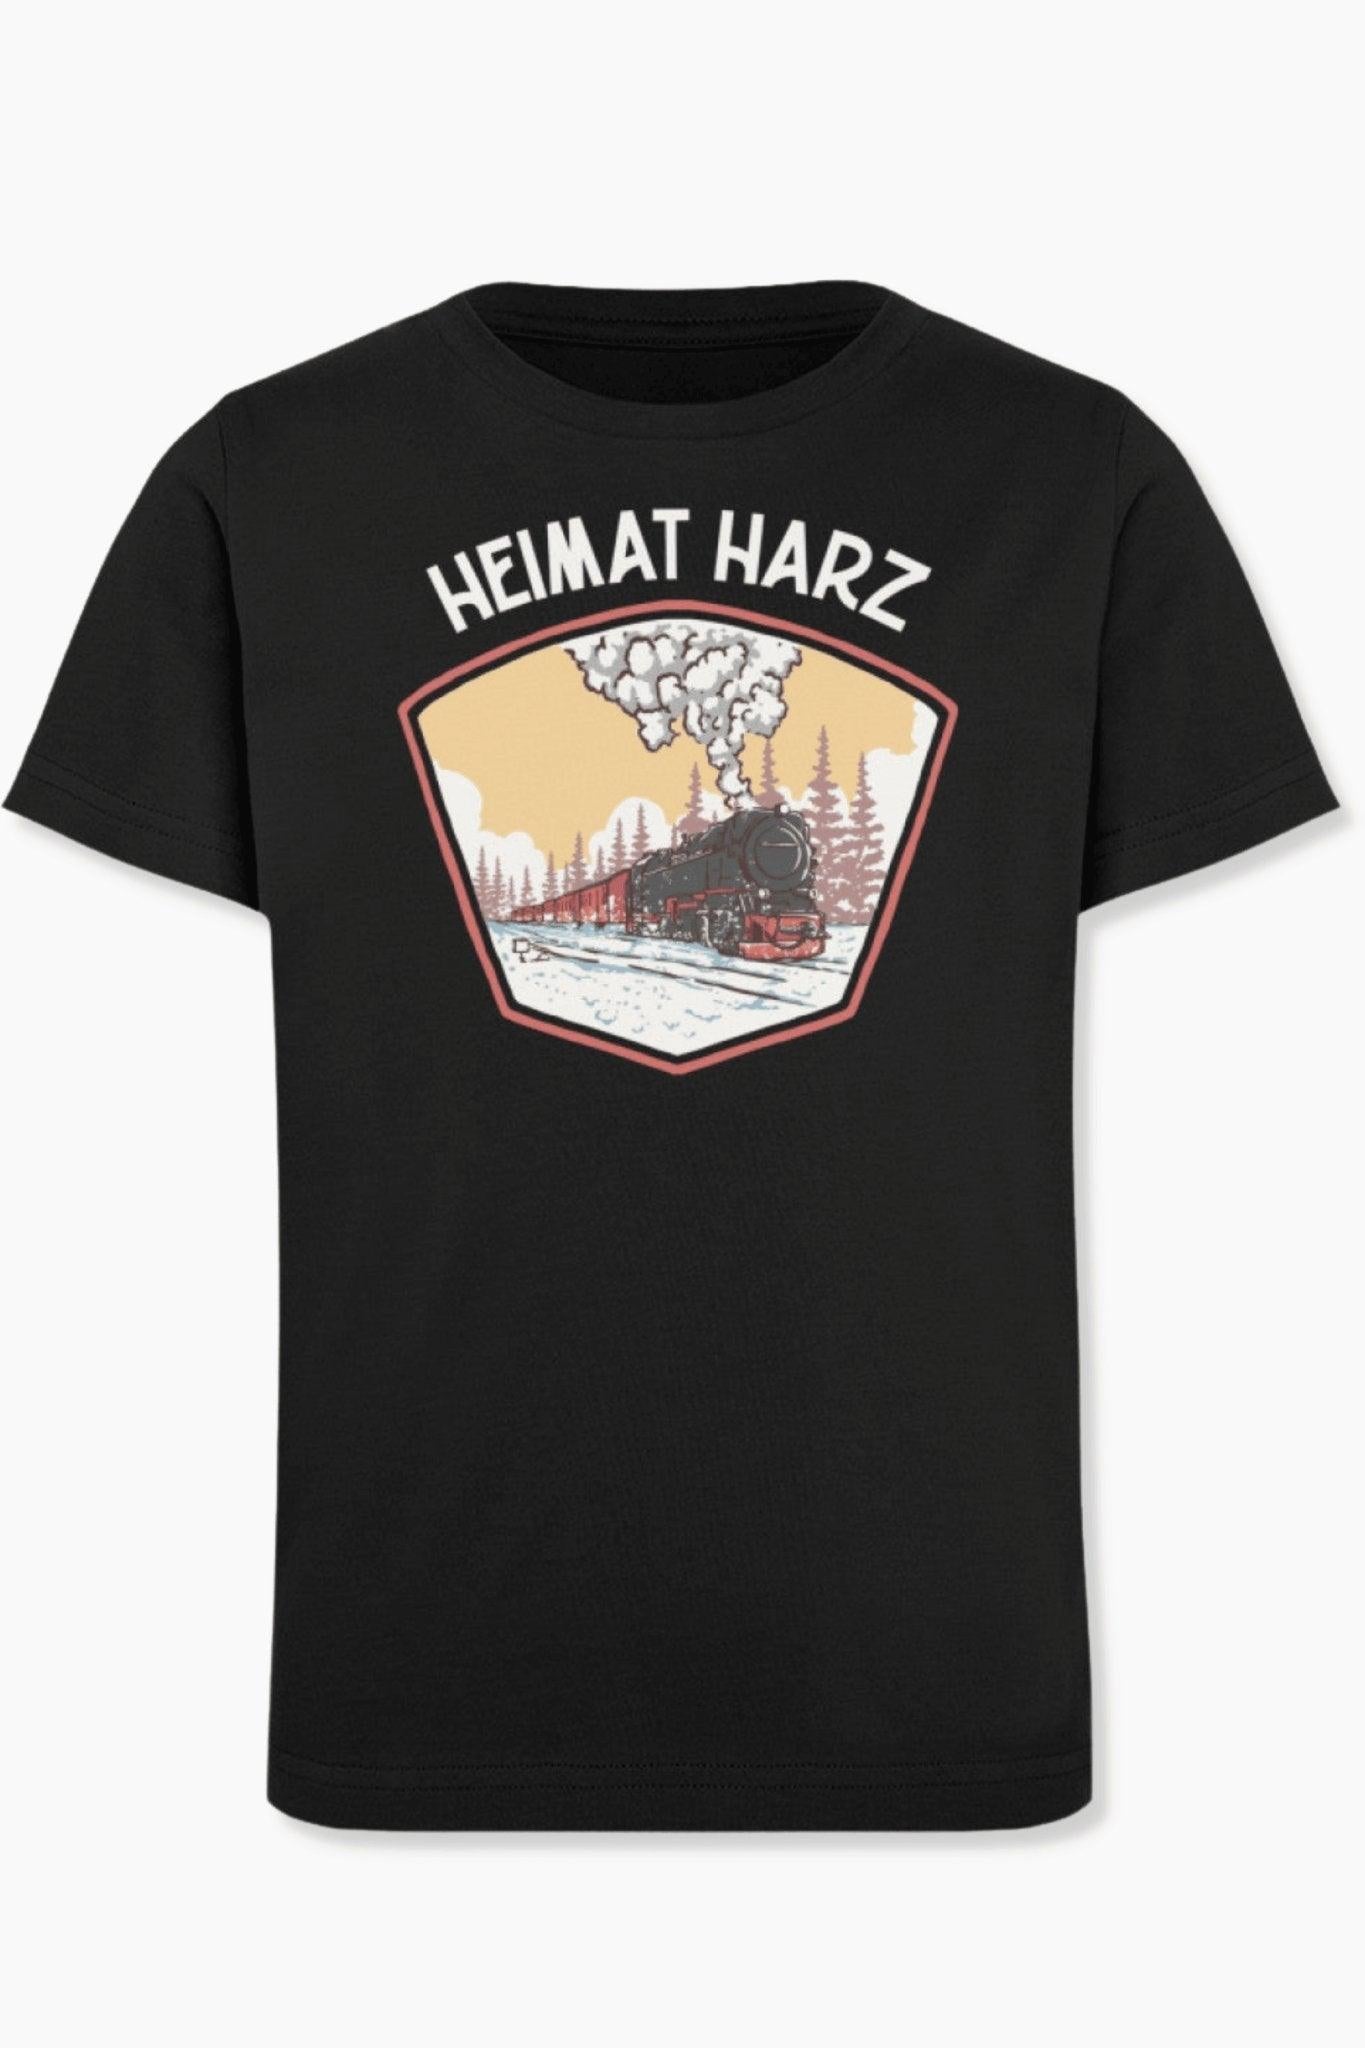 Kinder T-Shirt Heimat Harz - Heimat Harz Shop